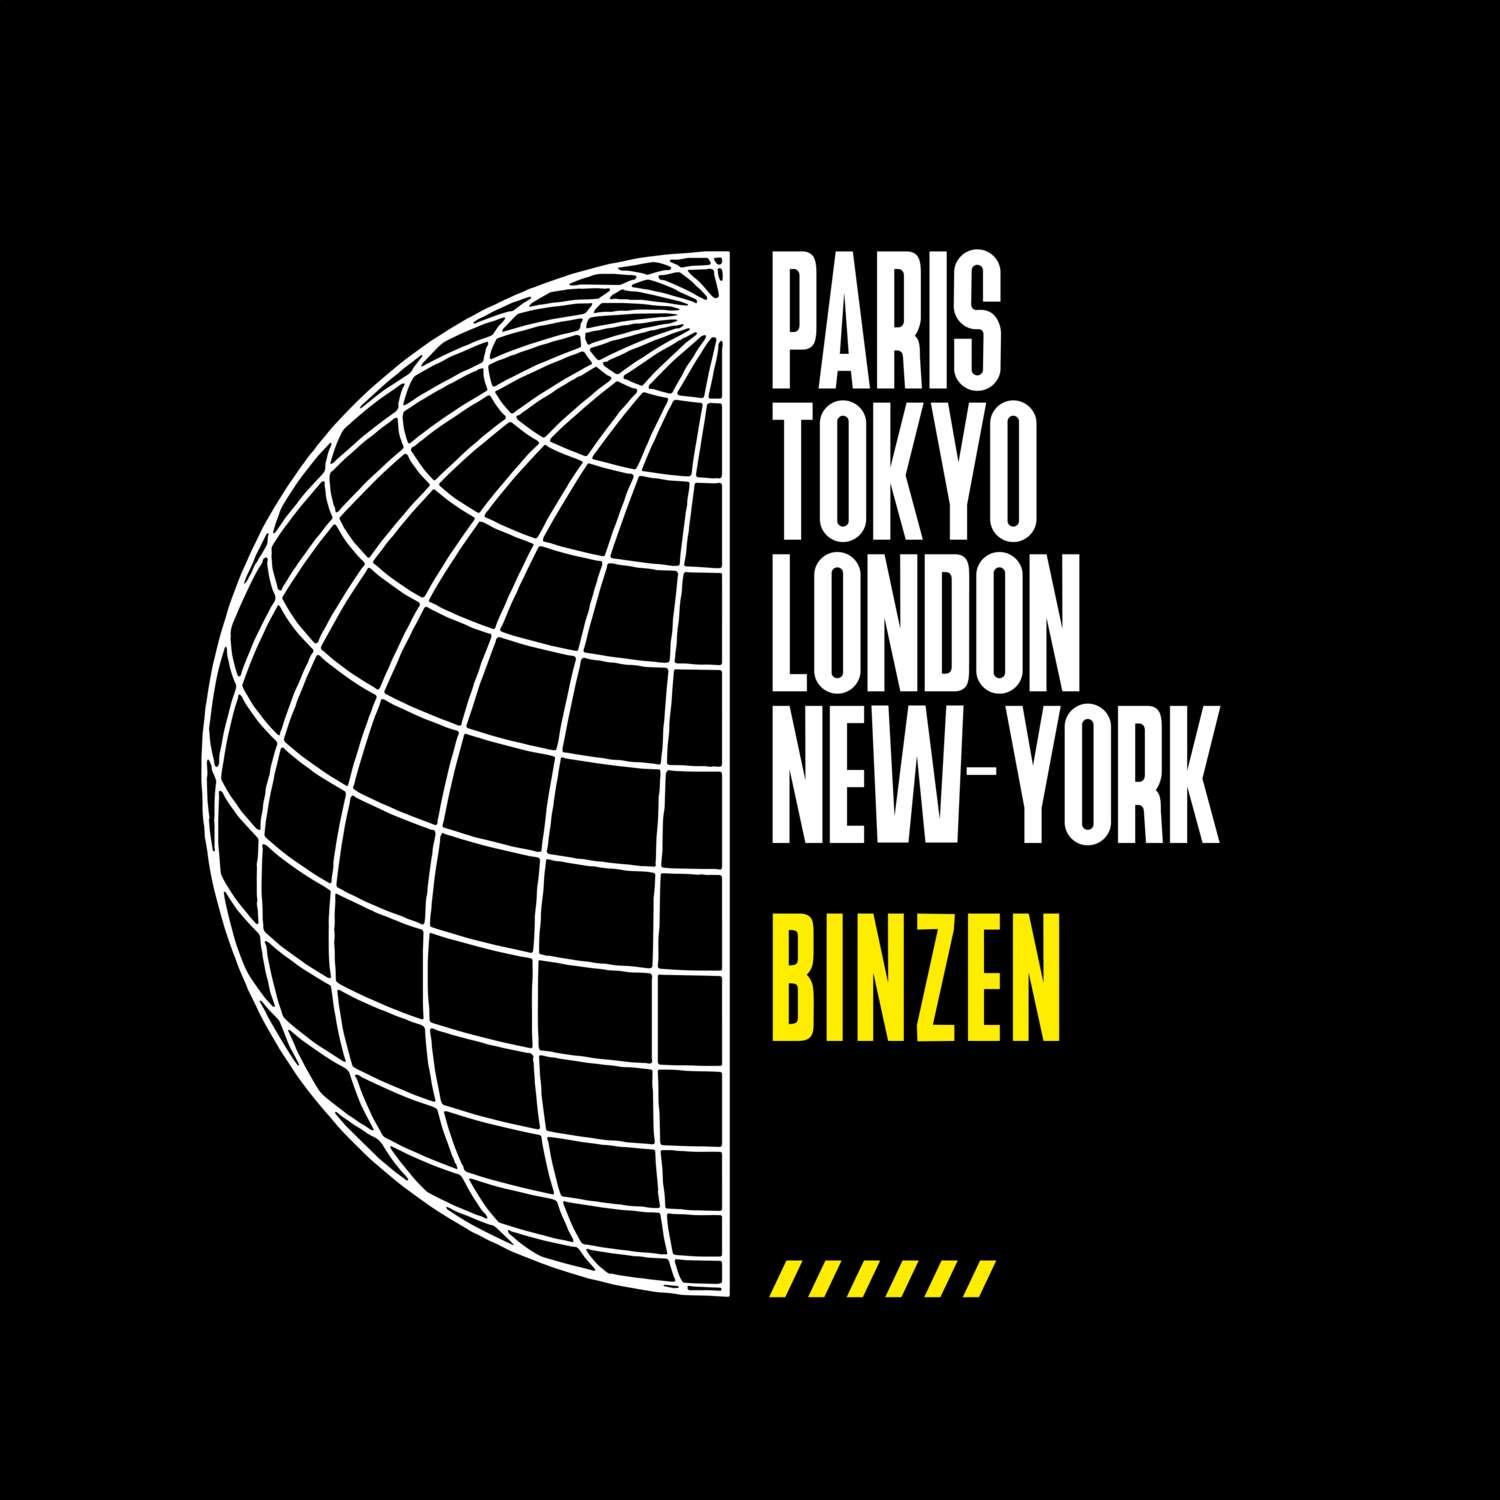 Binzen T-Shirt »Paris Tokyo London«